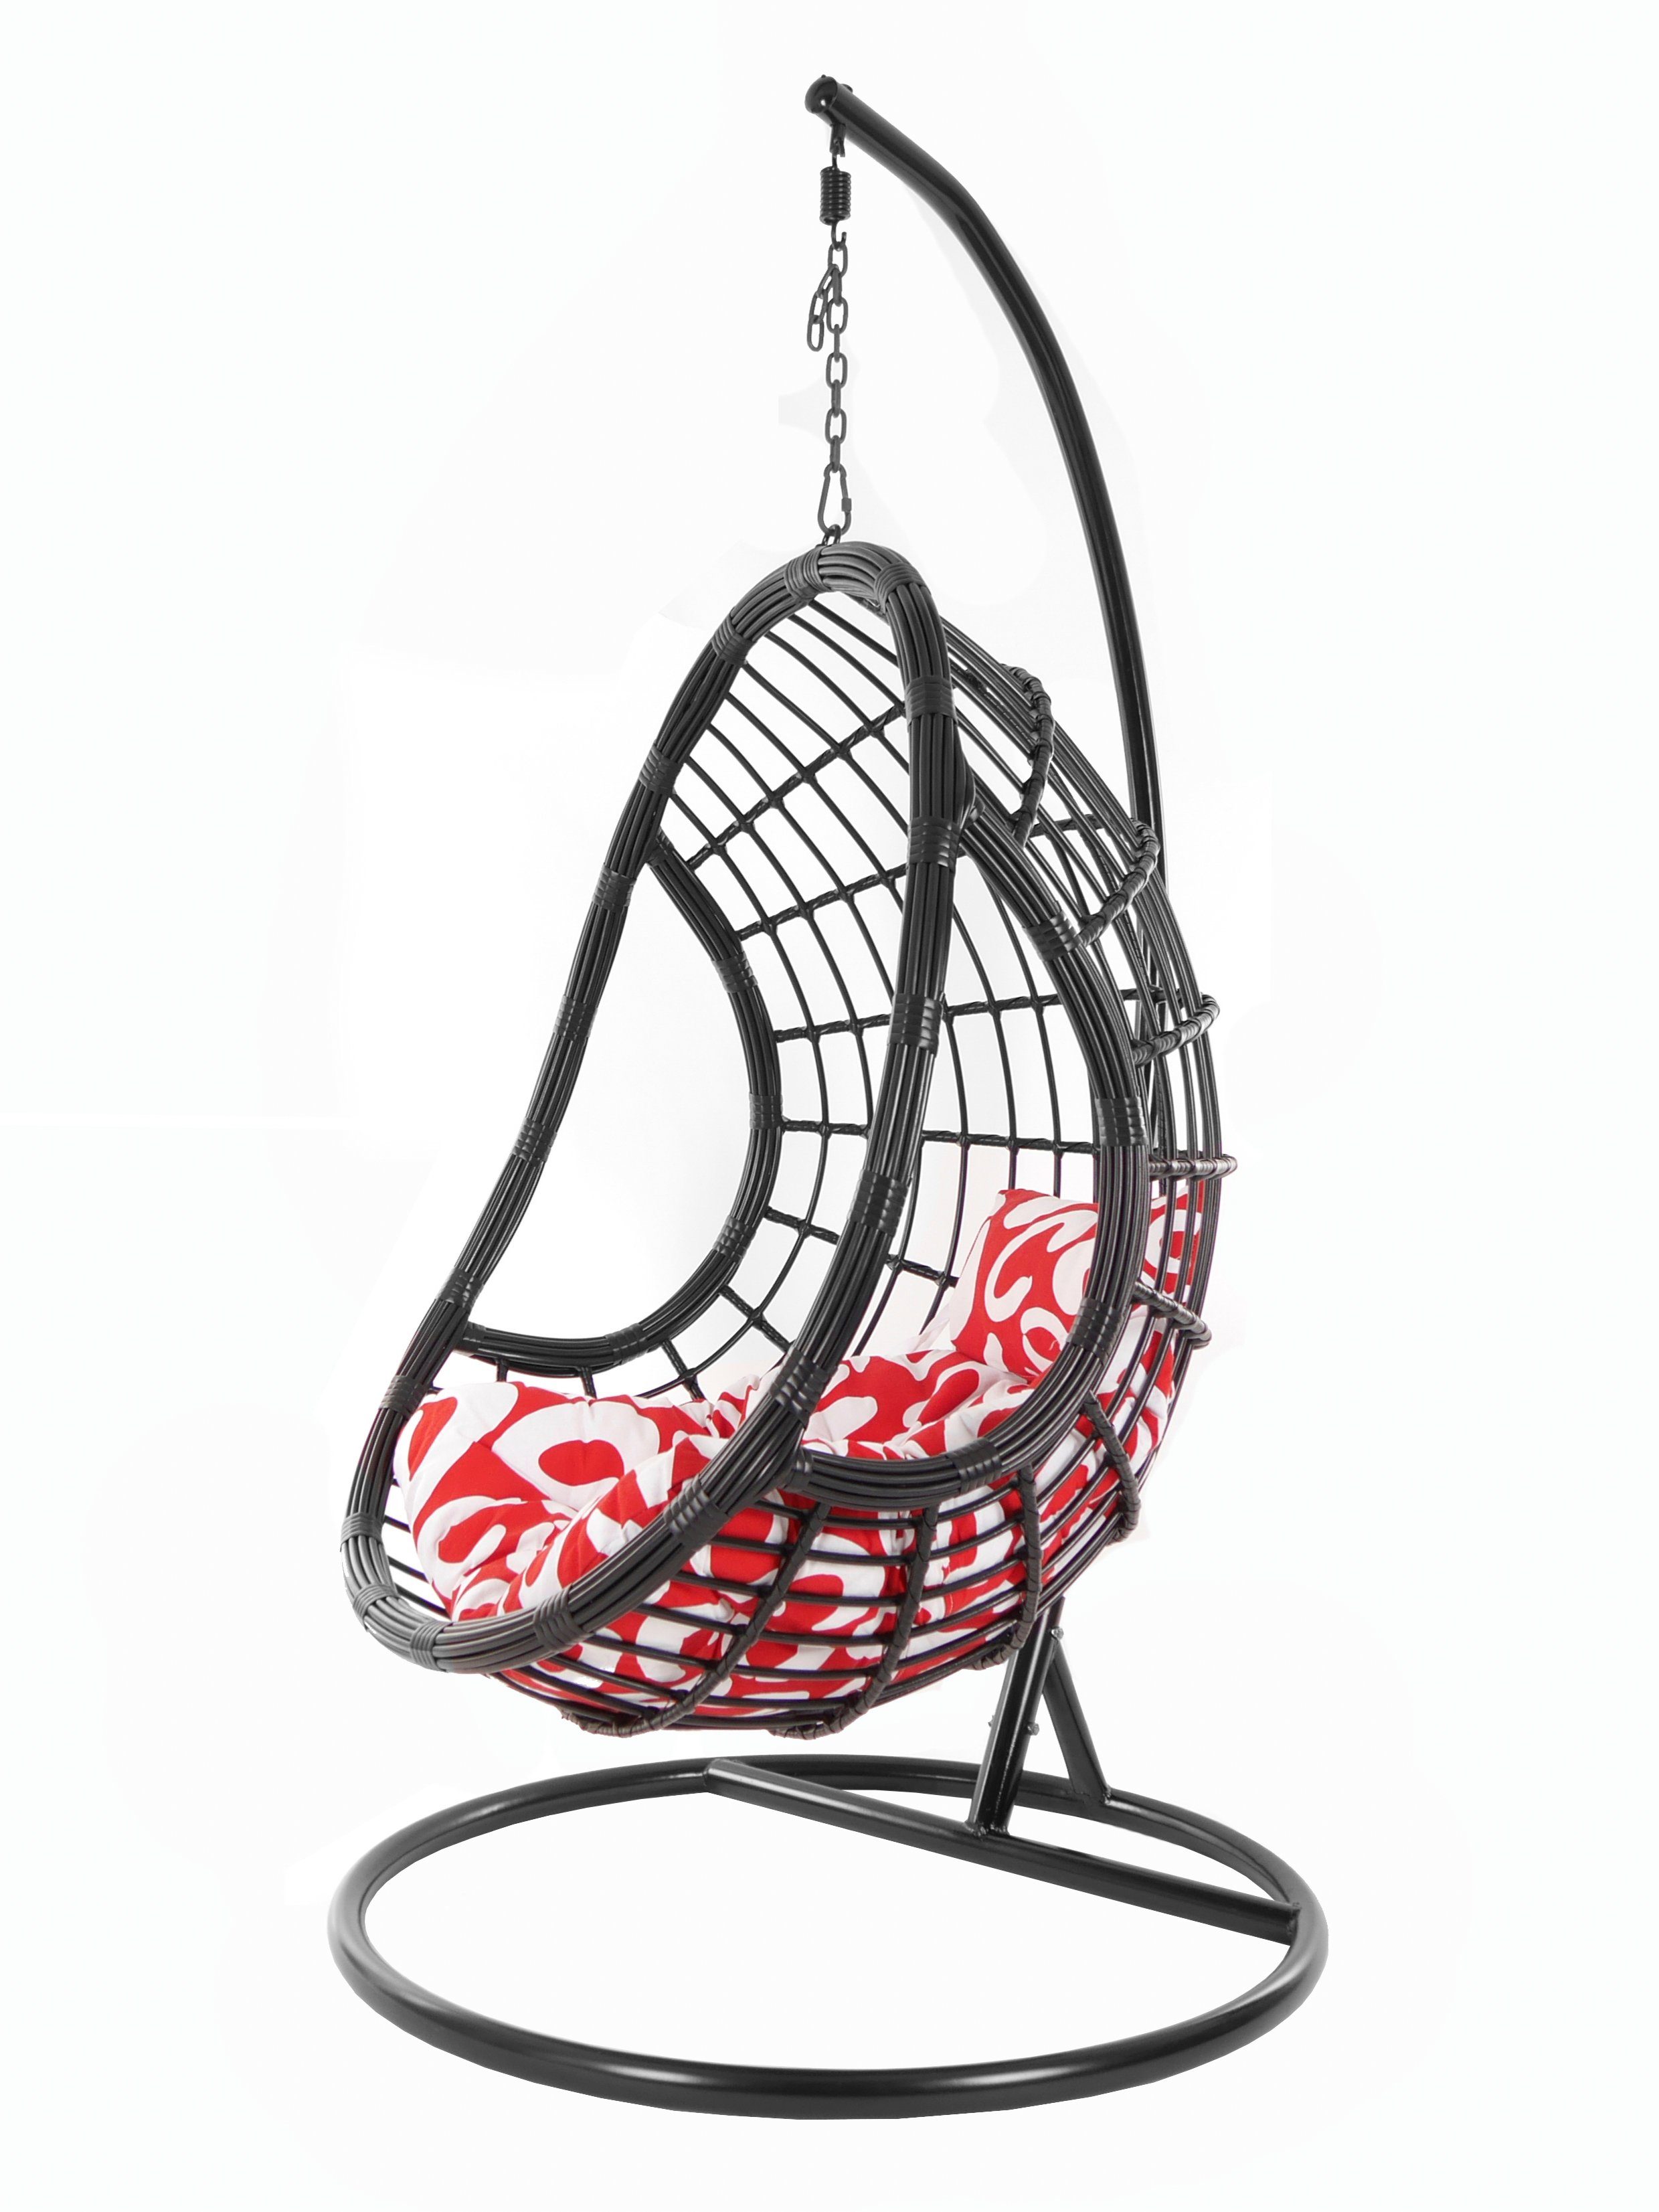 KIDEO Hängesessel PALMANOVA black, Hängesessel Swing schwarz, edles Schwebesessel, Gestell mit Loungemöbel, gemustert Design Kissen, Chair, (3012 und curly)